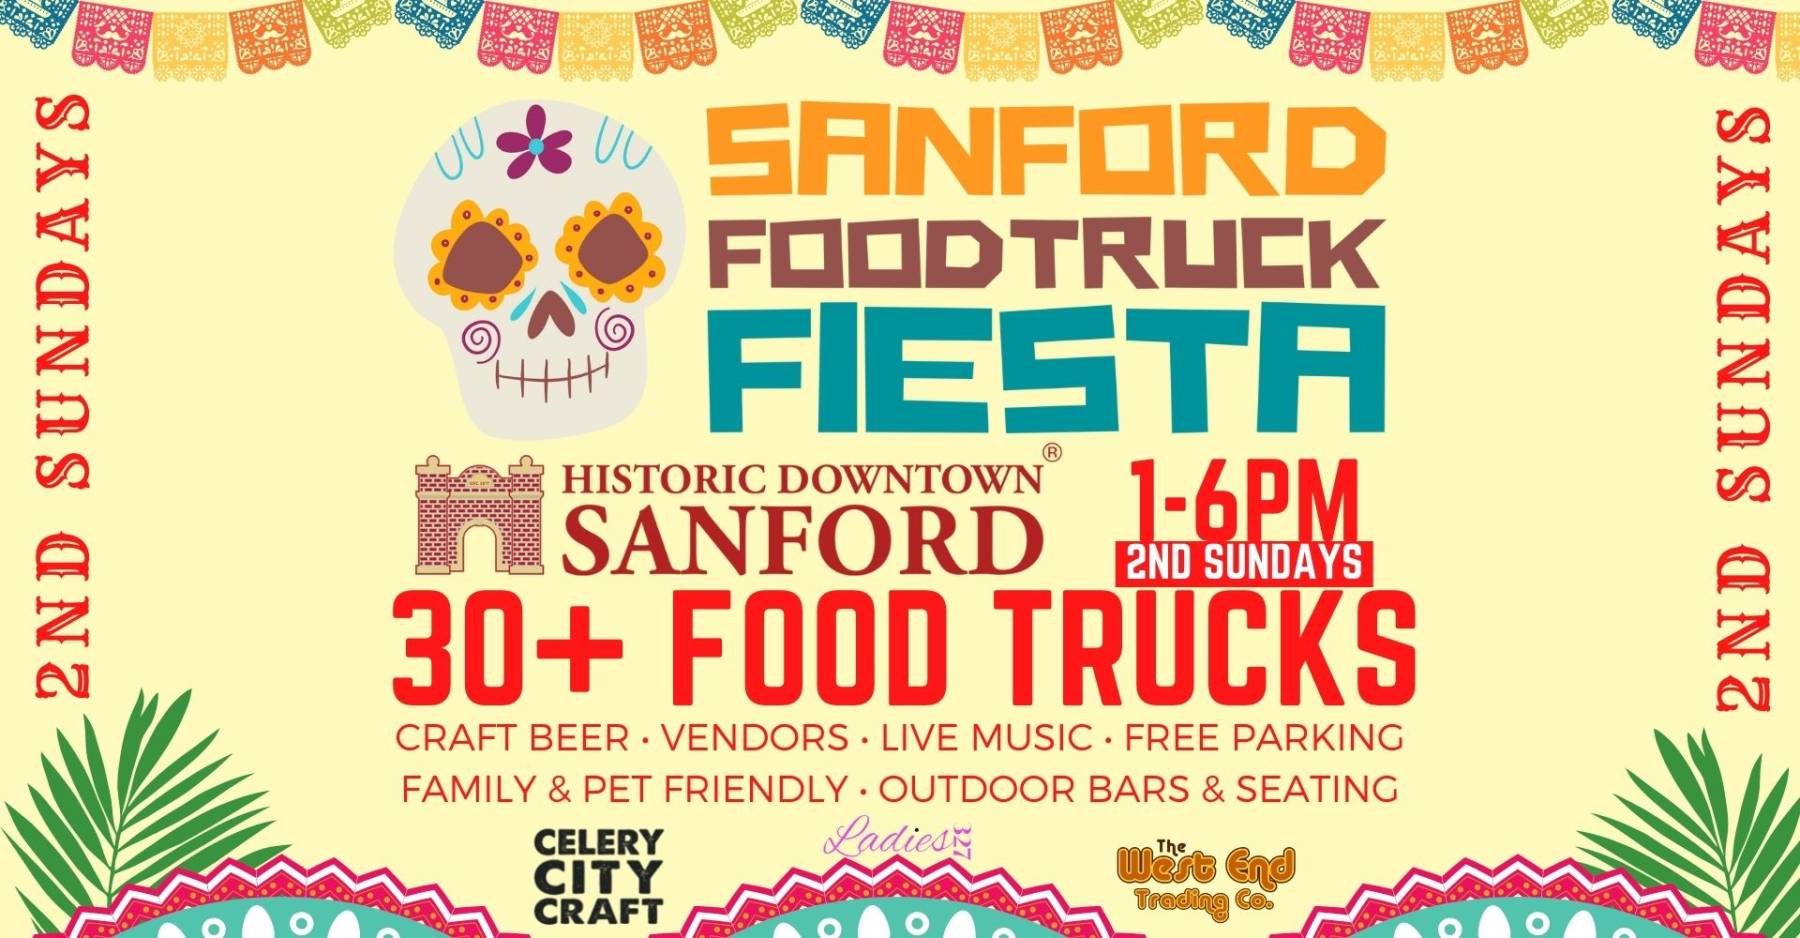 Sanford Food Truck Fiesta in Historic Downtown Sanford - 2nd Sundays